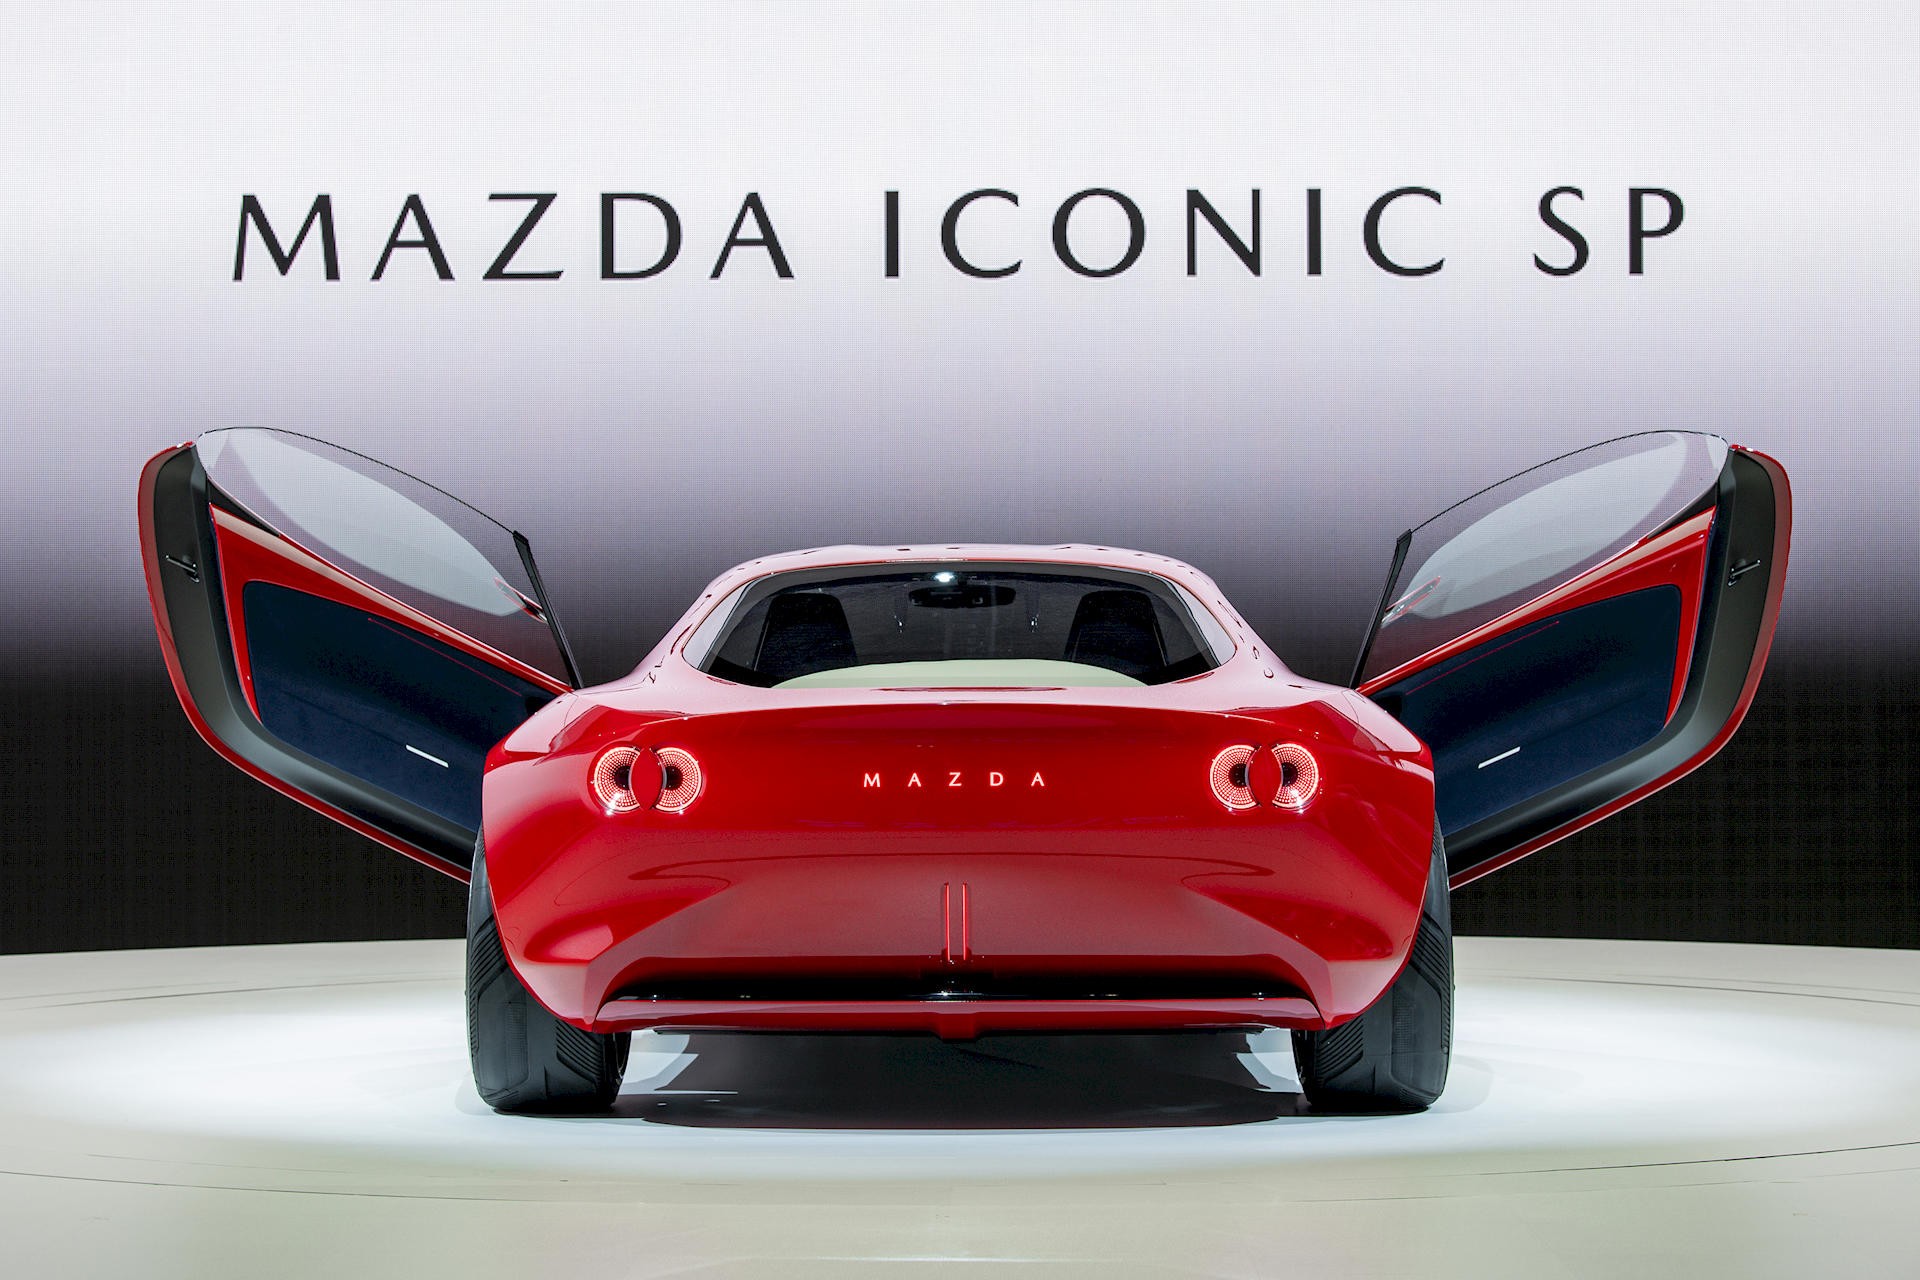 Mazda hồi sinh động cơ xoay với mẫu Iconic SP hybrid